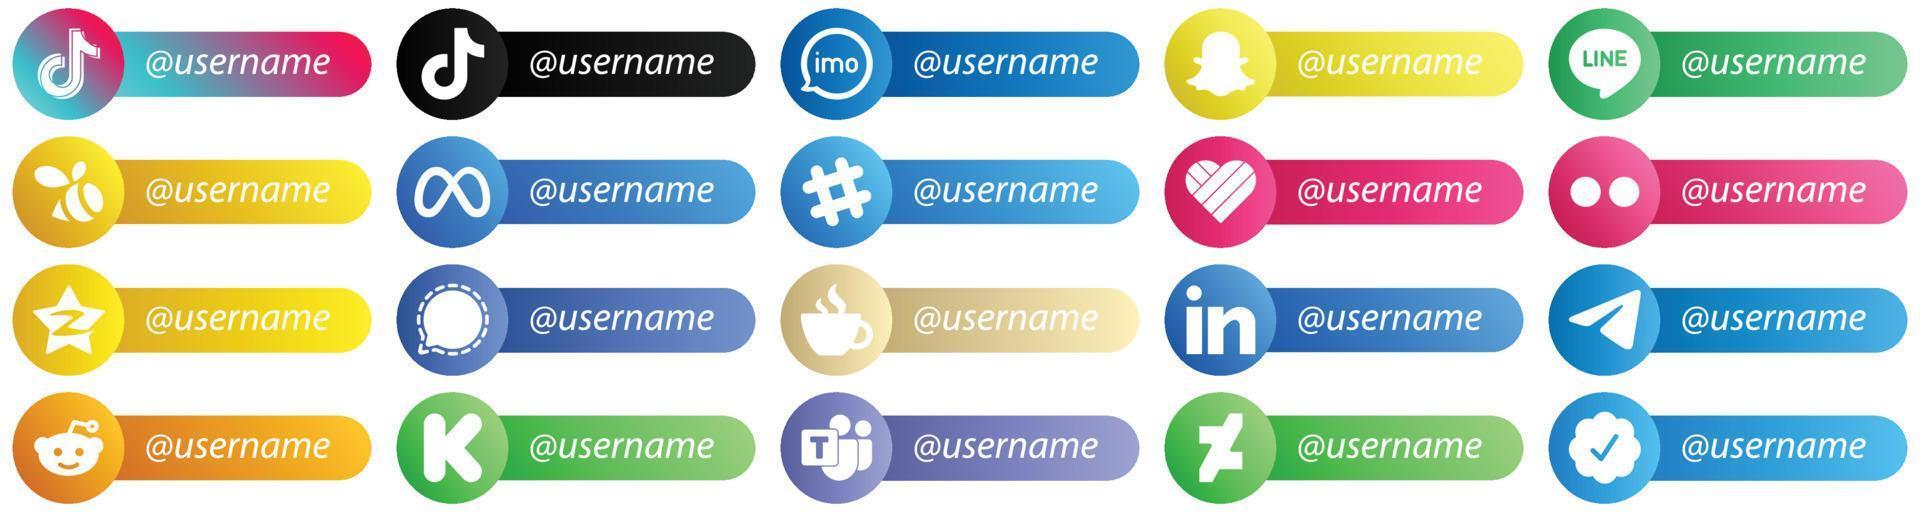 suivez-moi jeu d'icônes de style de carte de plate-forme de réseau social 20 icônes telles que yahoo. comme. icônes spotify et méta. polyvalent et haut de gamme vecteur